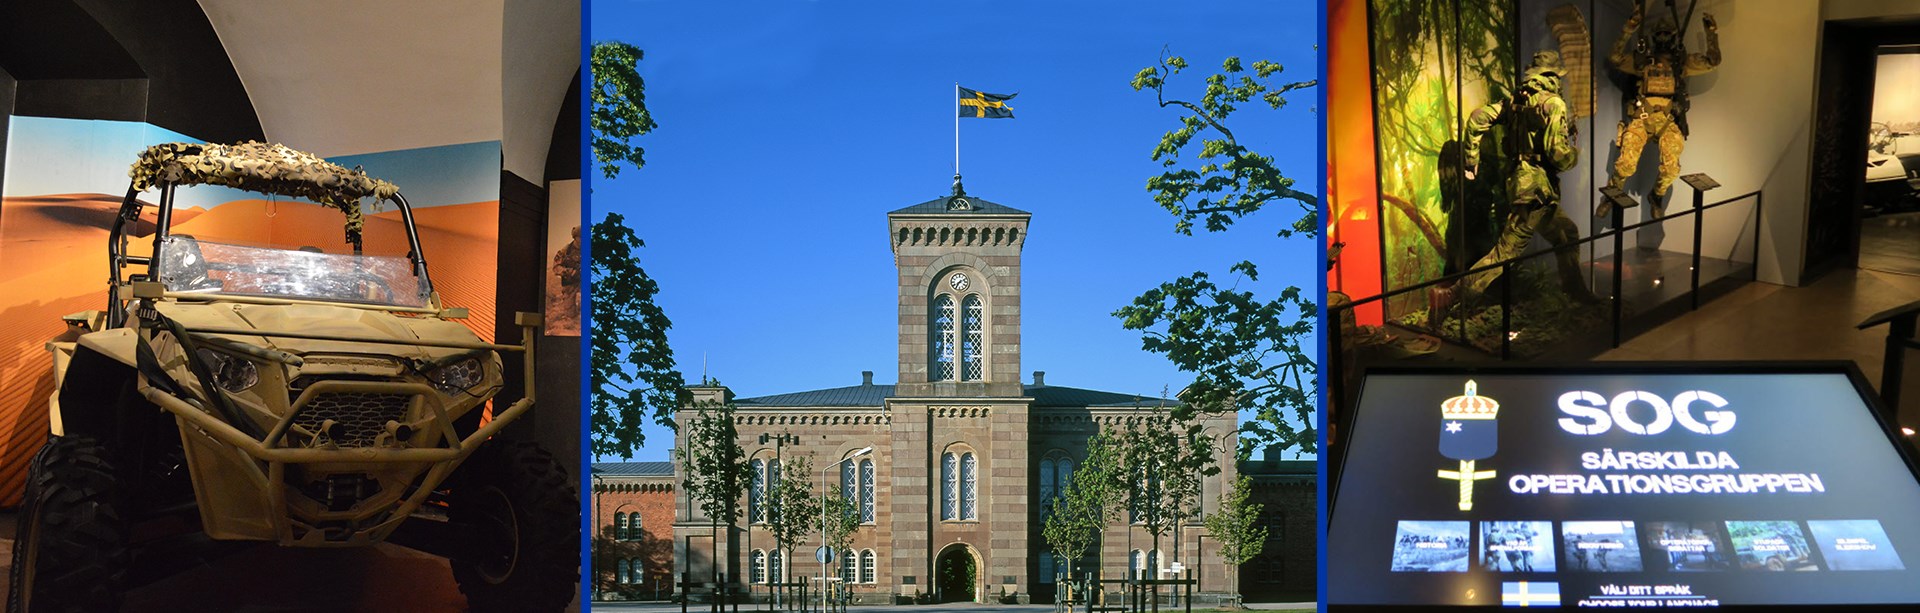 Medlemsrabatt på Fästningsmuseet Karlsborg